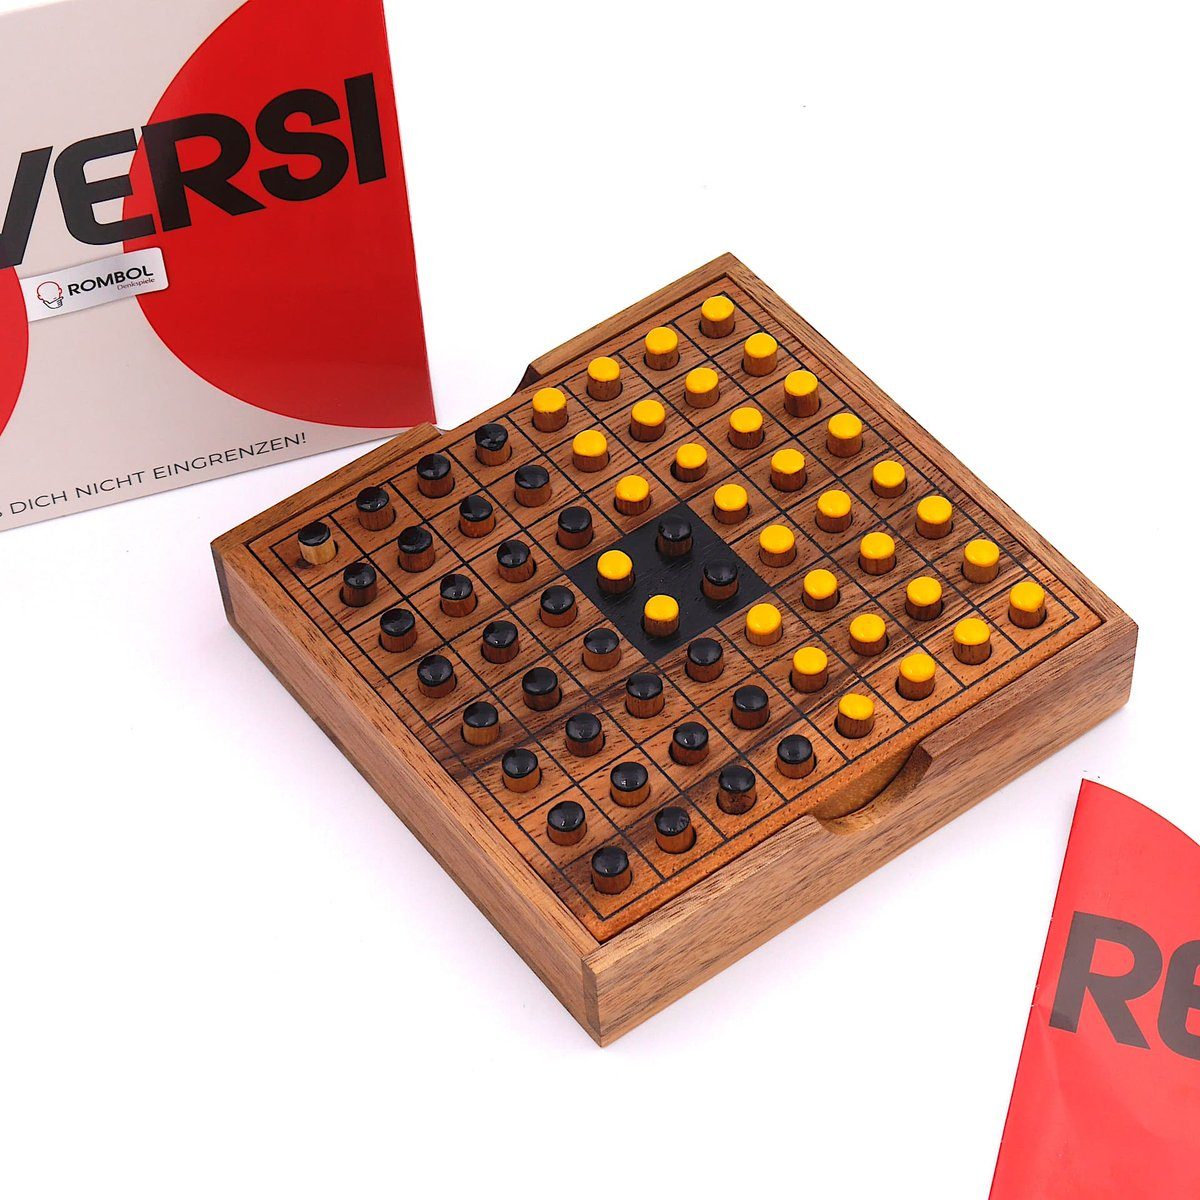 2 Holz, Denkspiele edlem aus Personen für Holzspiel Reversi ROMBOL Brettspiel gelb/schwarz – Interessantes Strategiespiel Spiel,